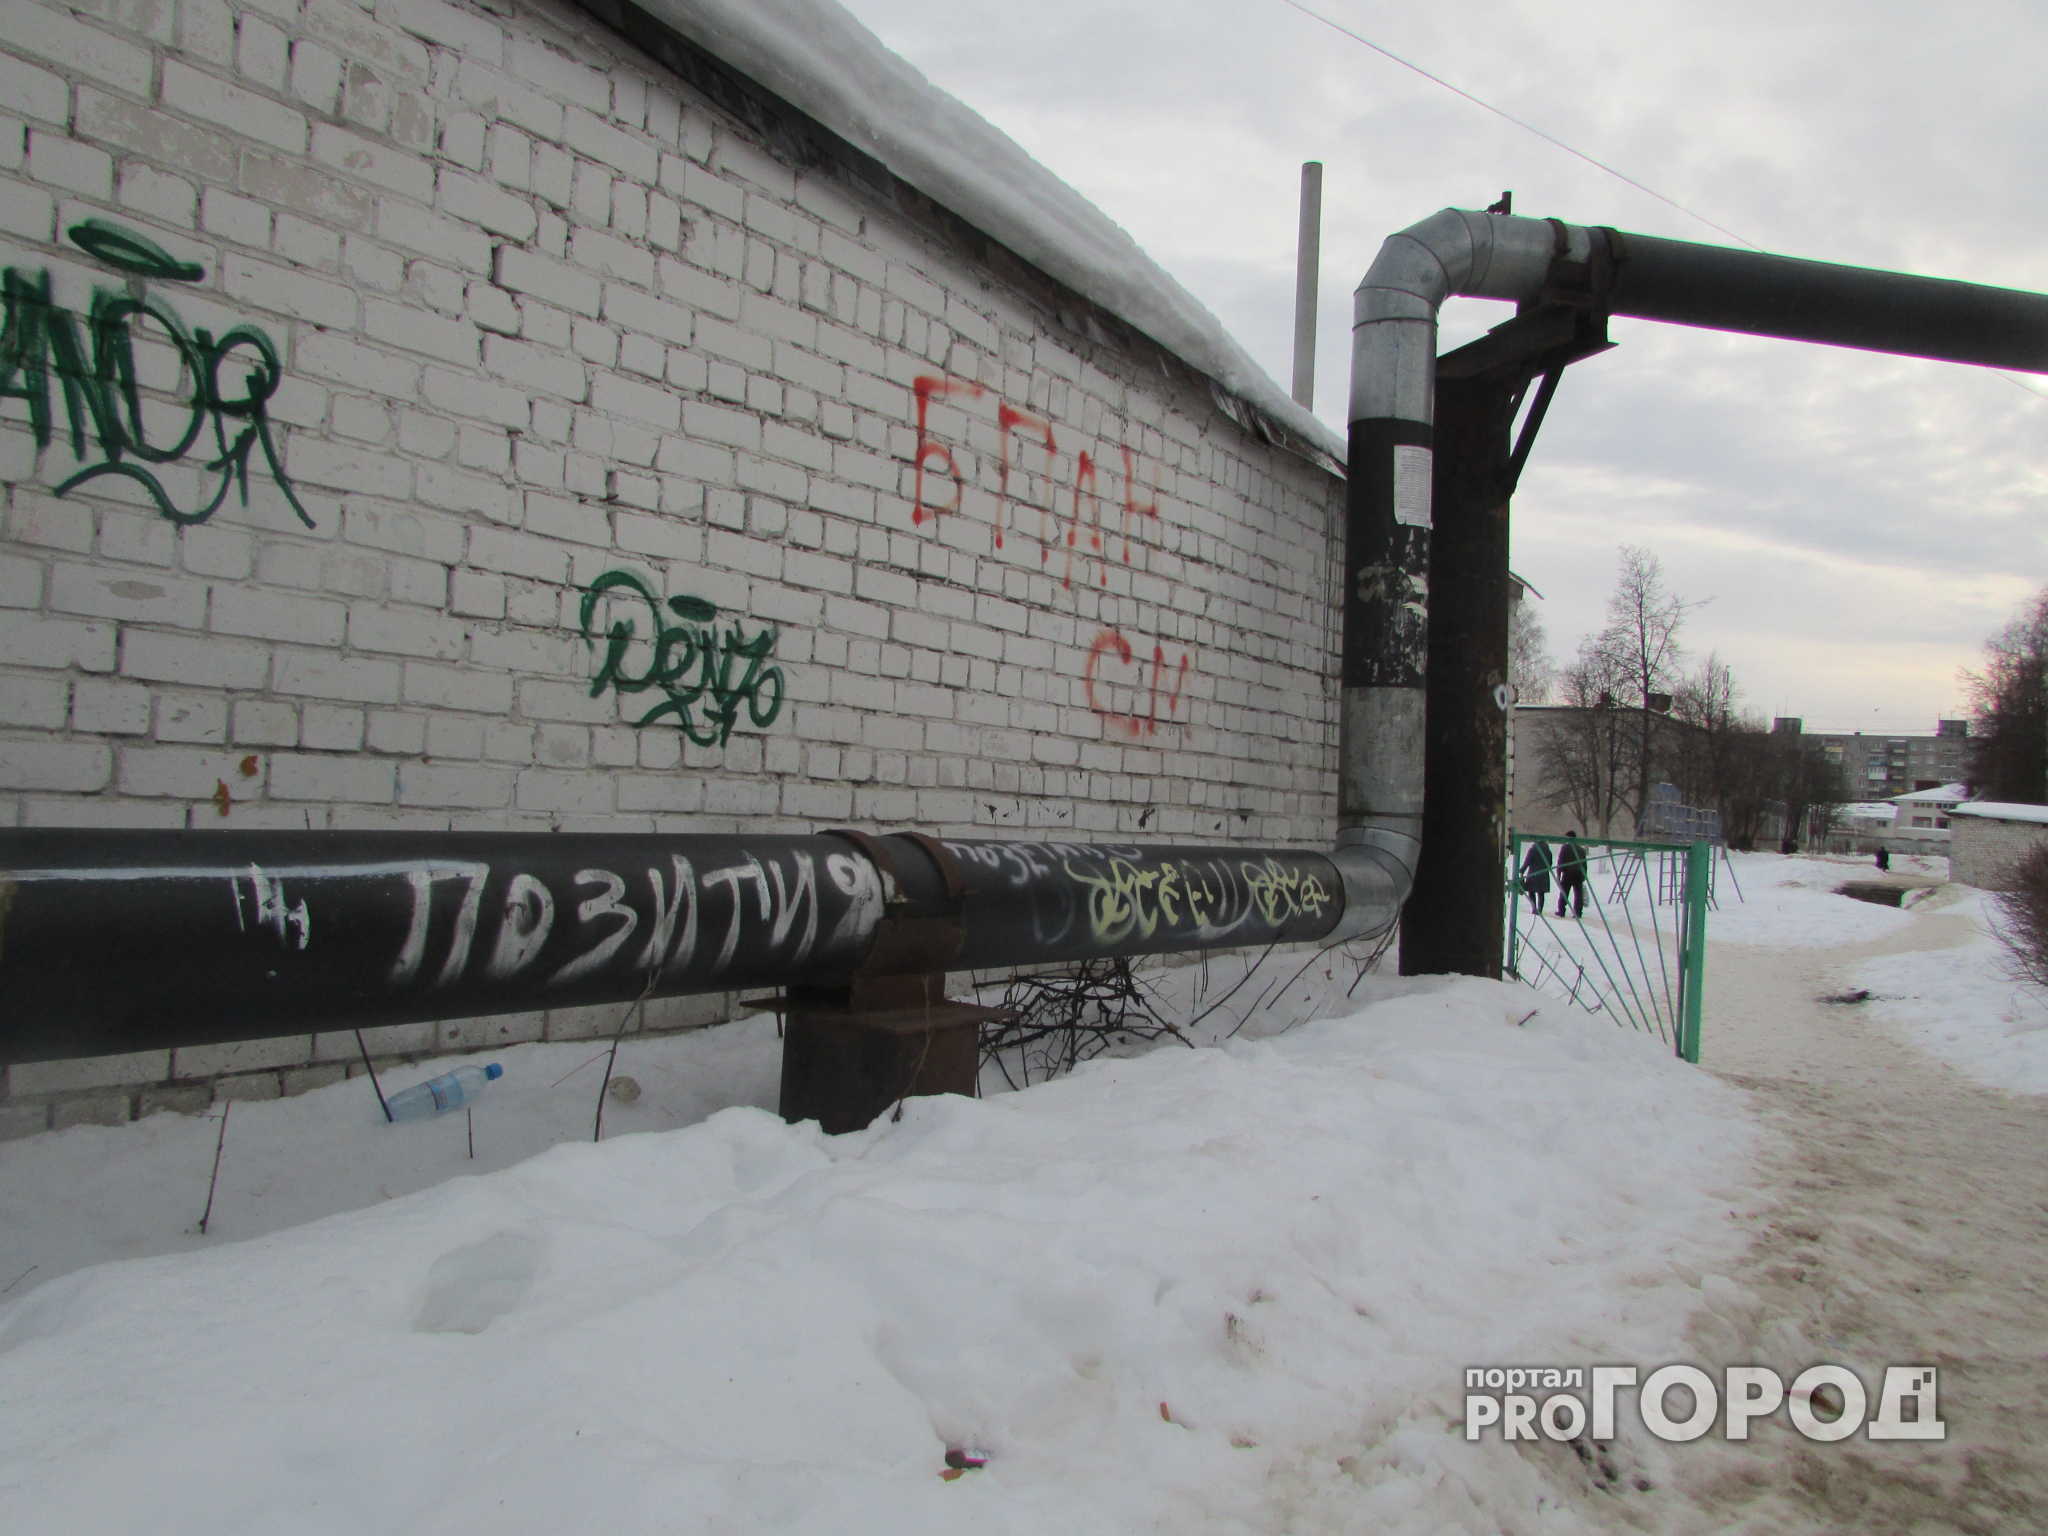 Владимирцы возмущены объявлениями о продаже наркотиков на городских стенах